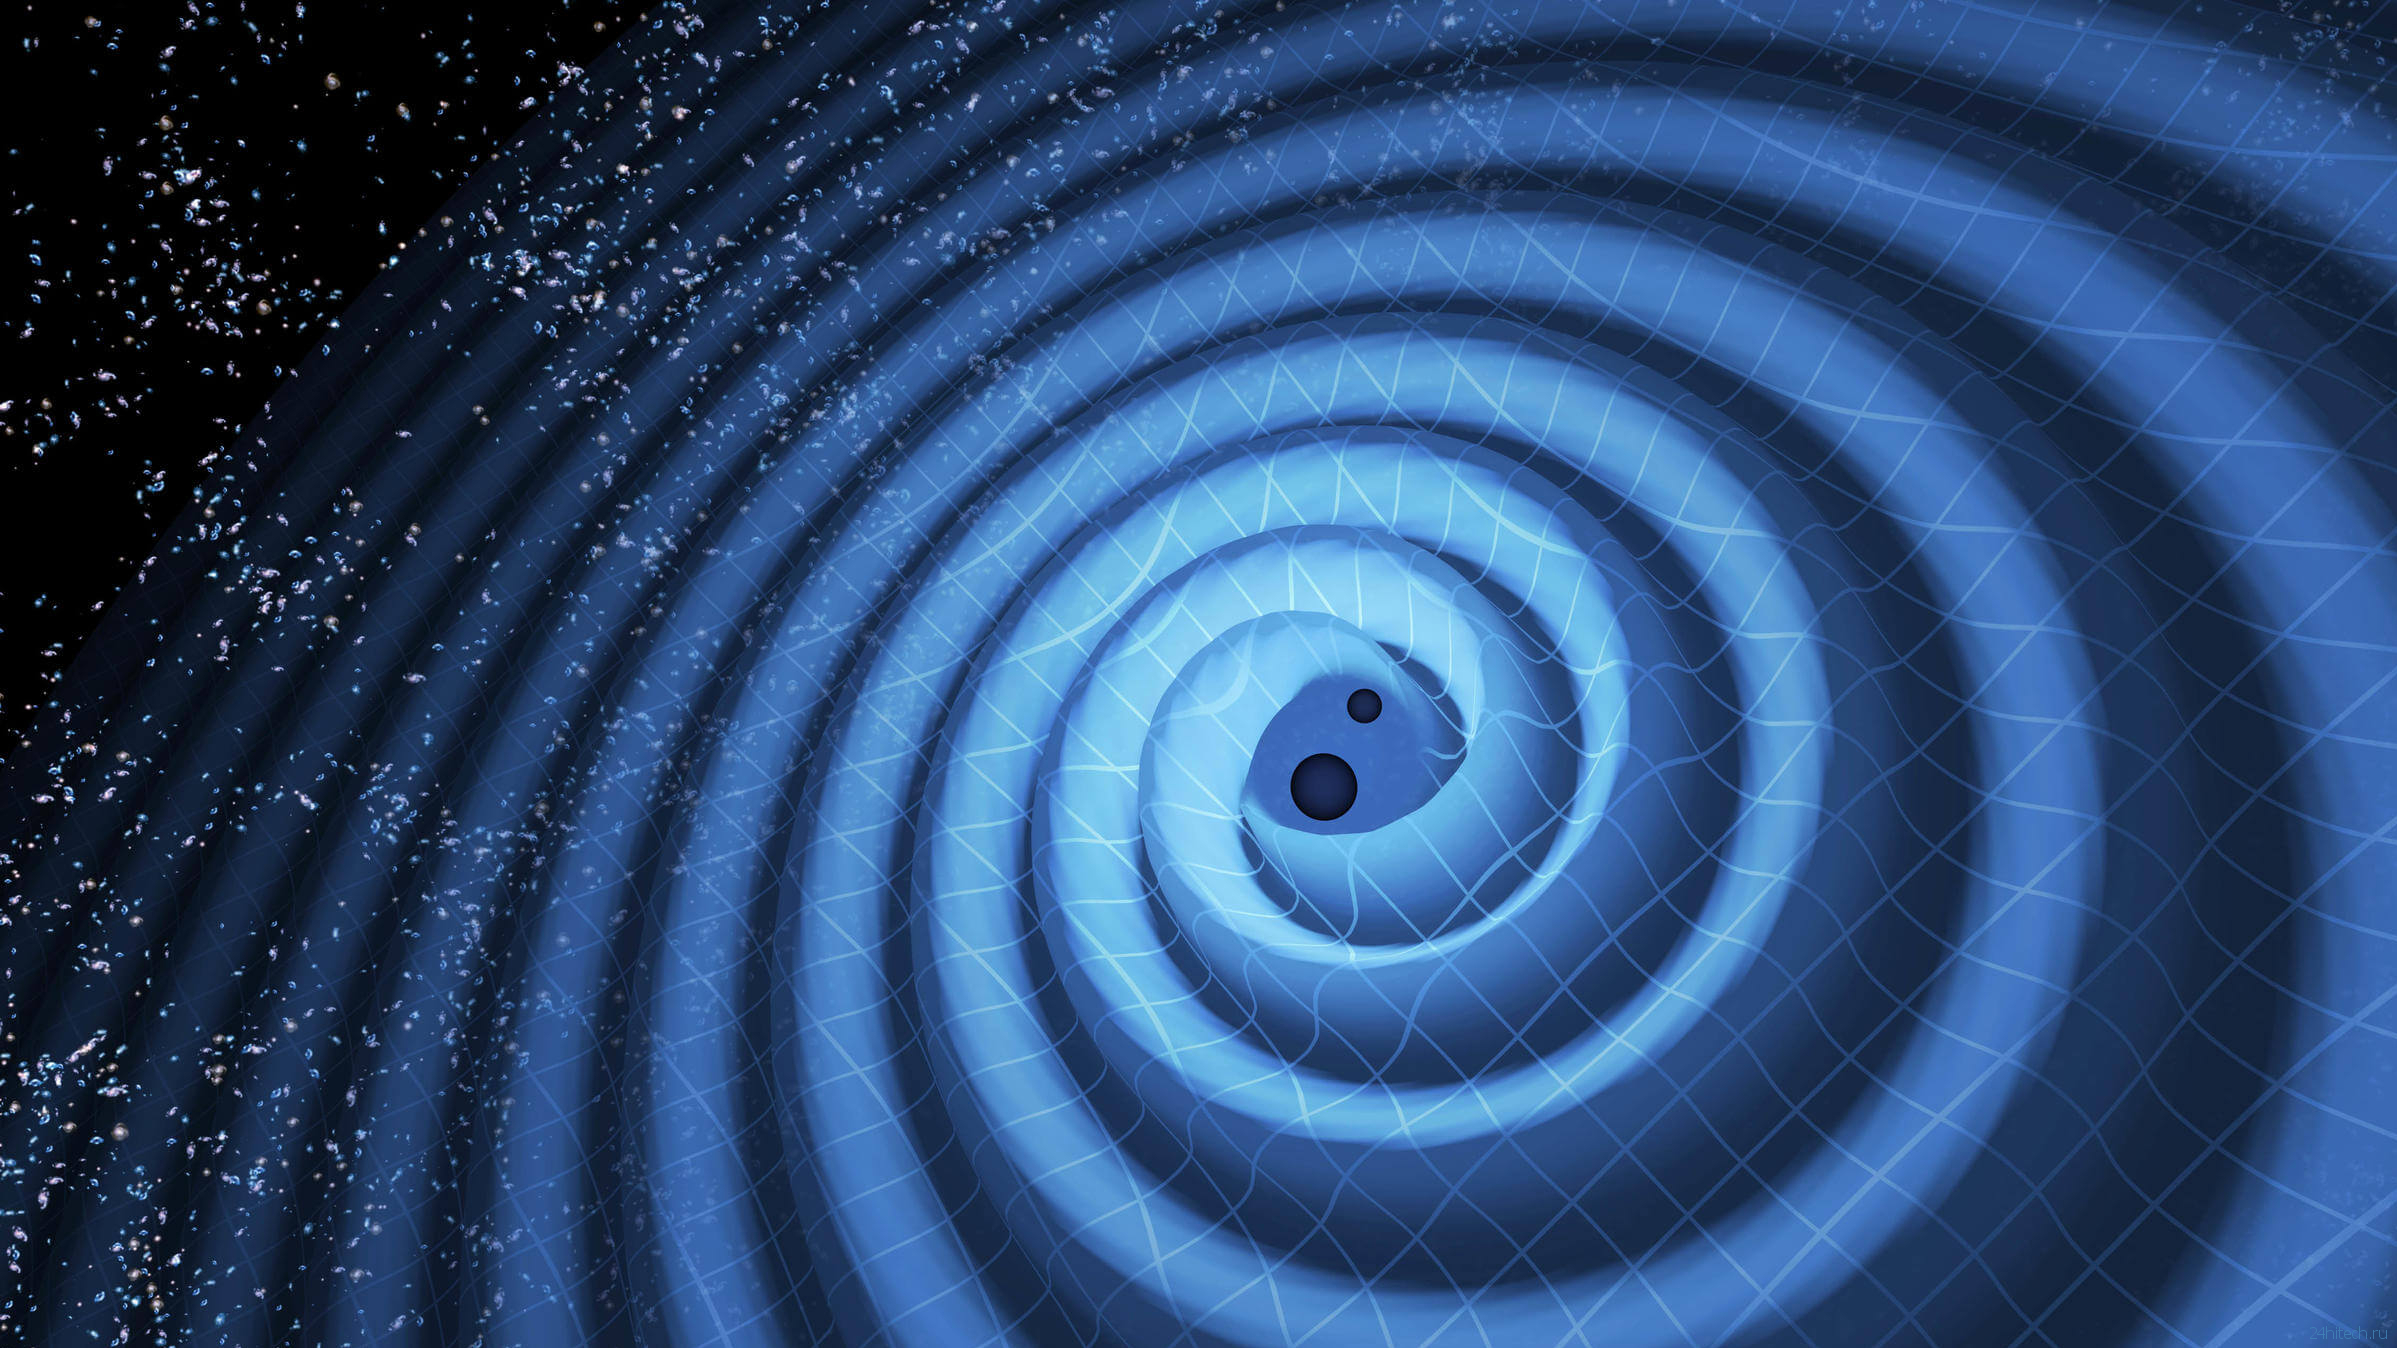 Что произойдет, если рядом с Землей появится черная дыра?